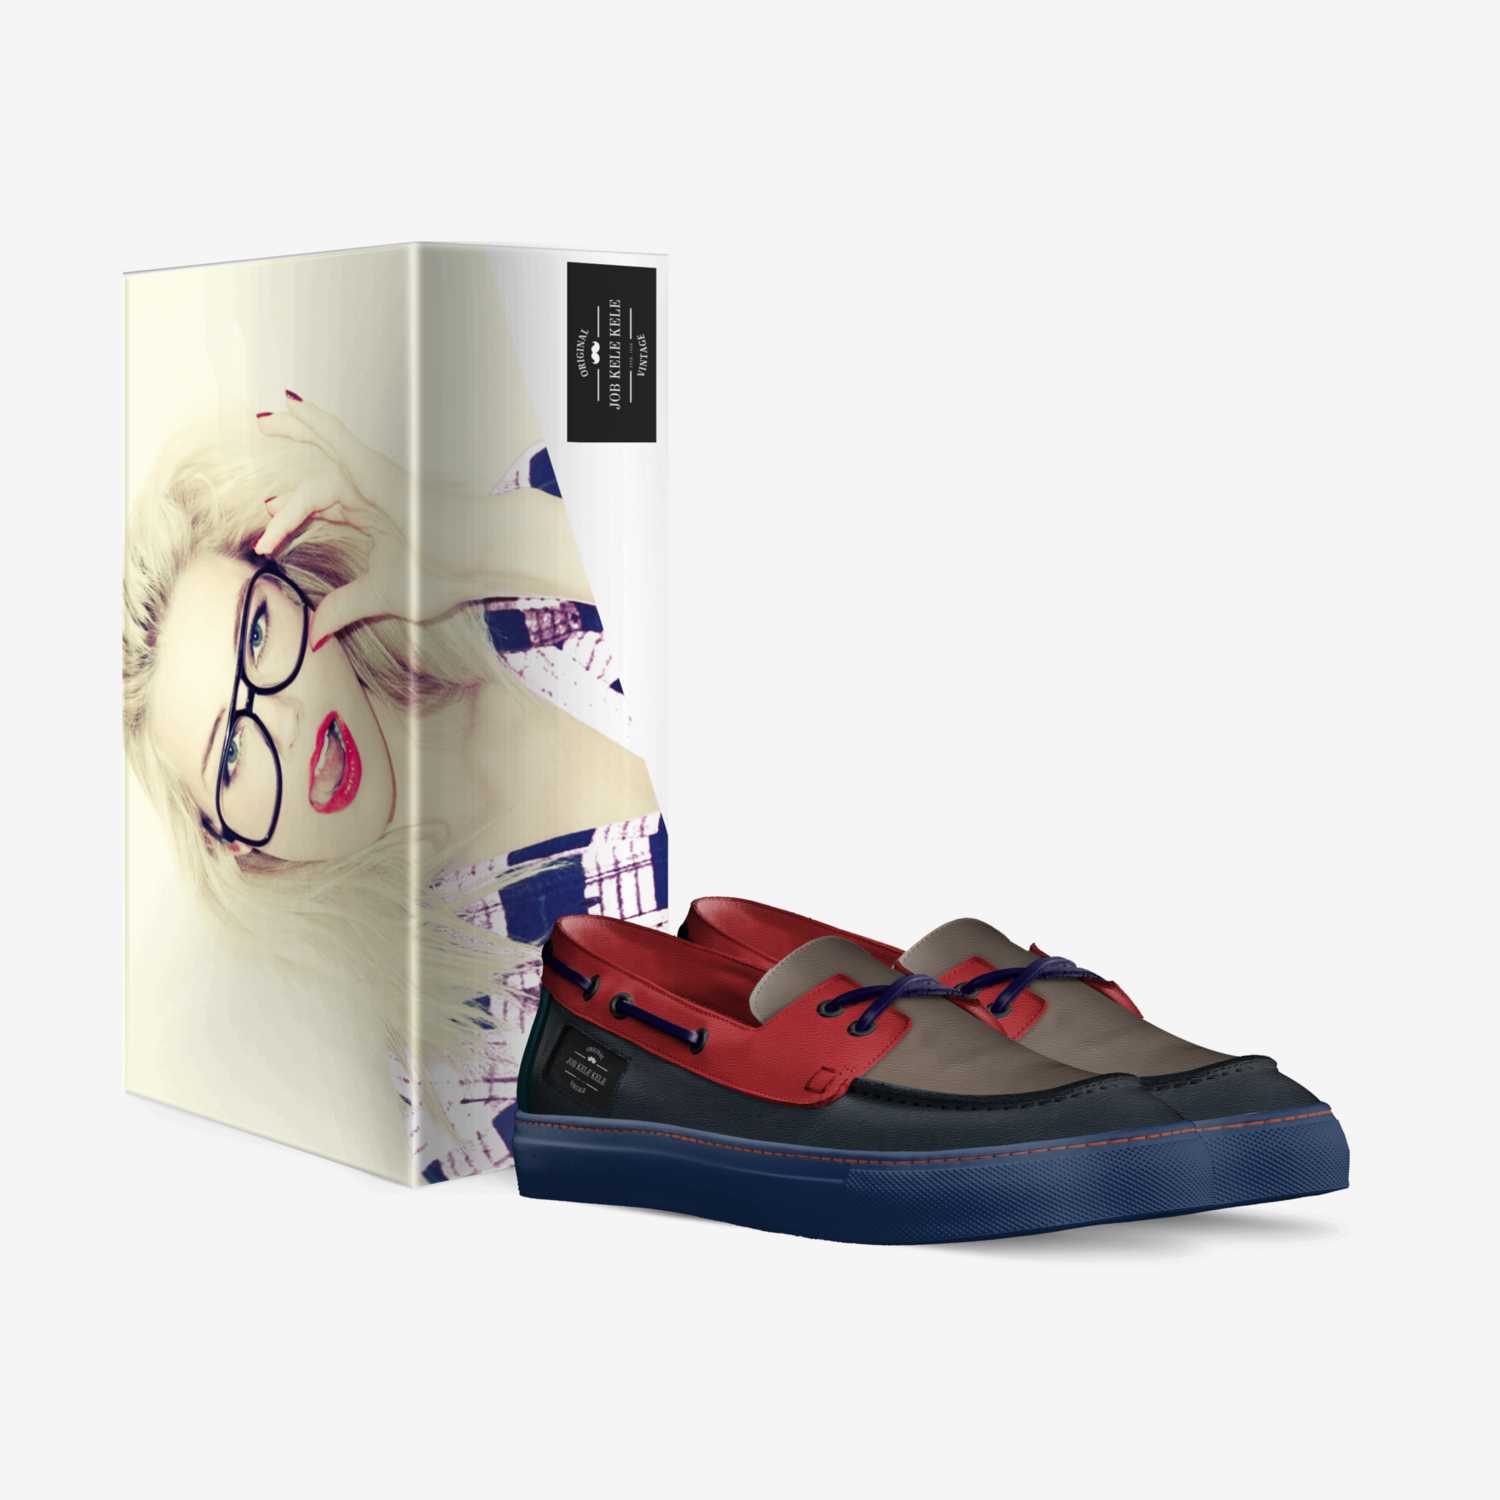 Job kele kele custom made in Italy shoes by Job Kele Kele | Box view